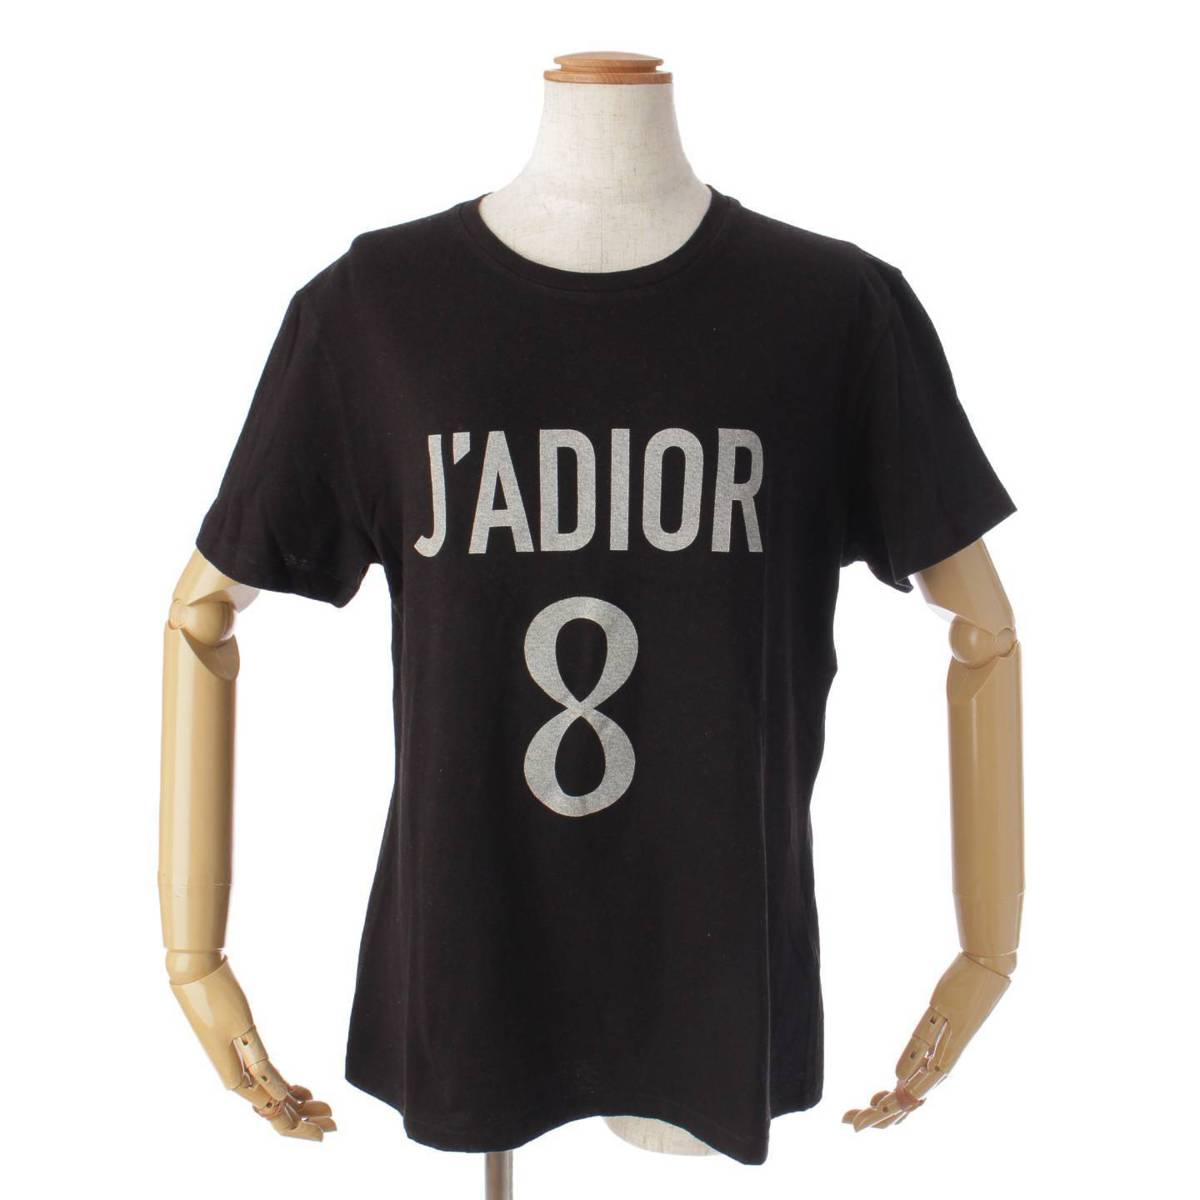 ディオール(DIOR) 18年 J'ADORE DIOR 8 クルーネック プリント 半袖 カットソー Tシャツ ブラック M